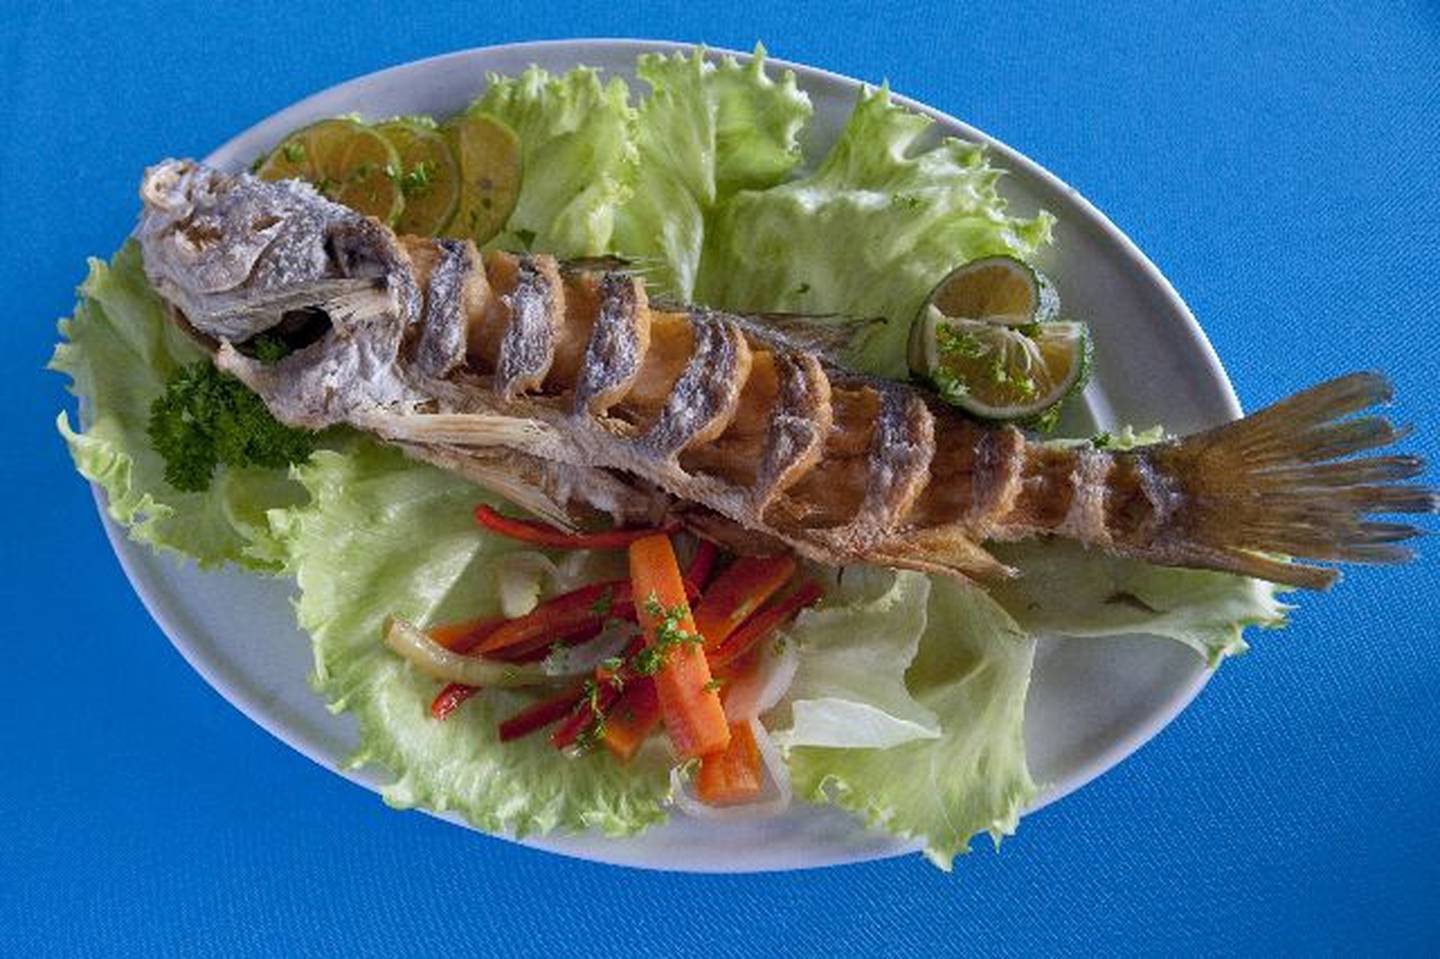 Qué comer después de una intoxicación por pescados y mariscos? | La Nación